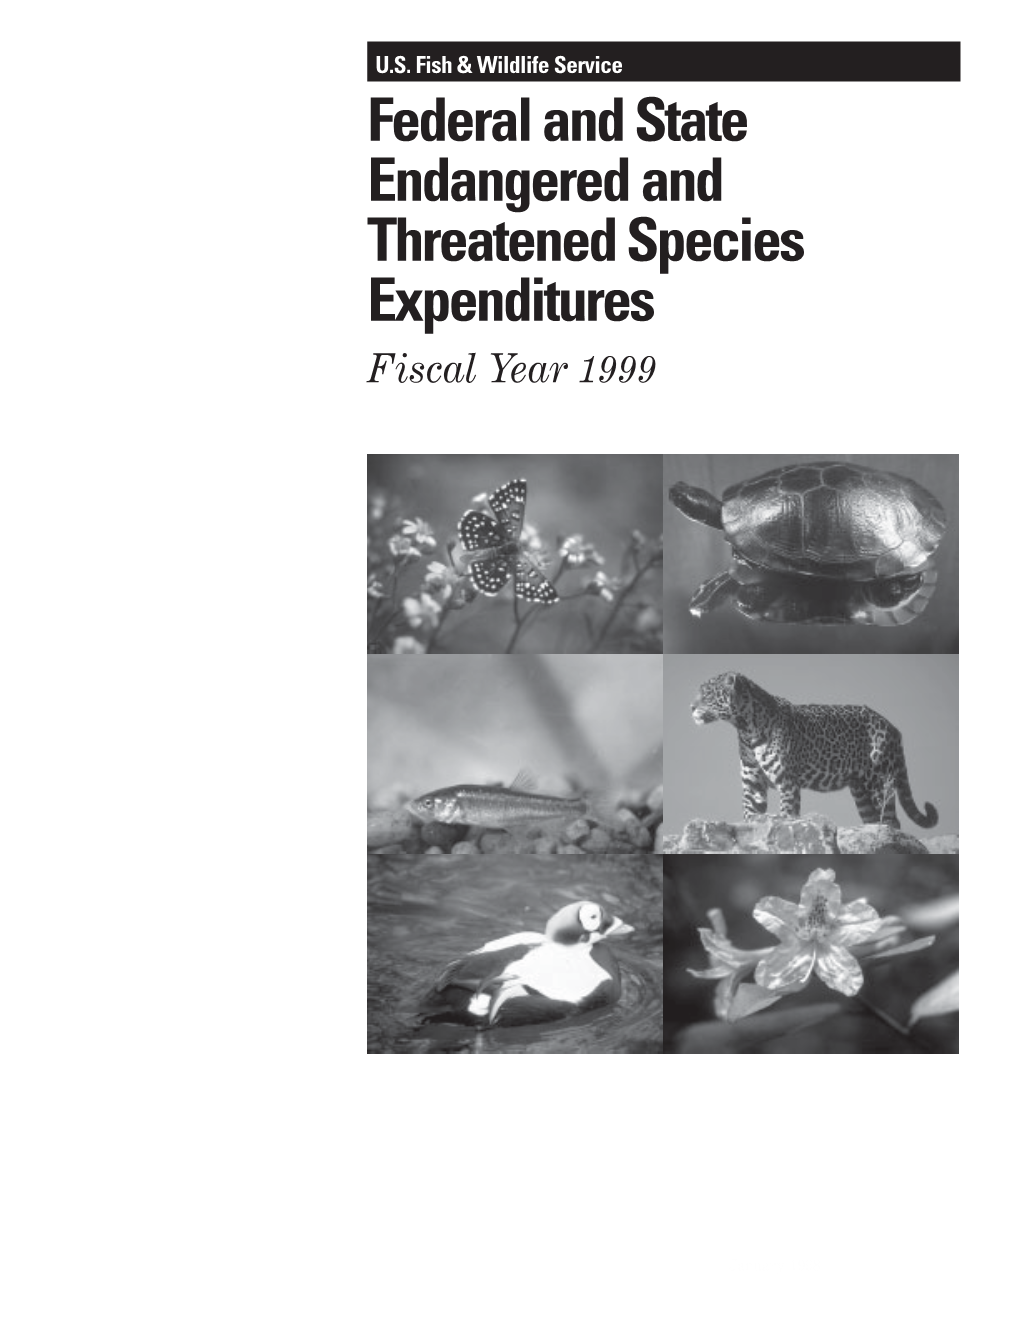 Endangered Species Expenditure Report (1999)